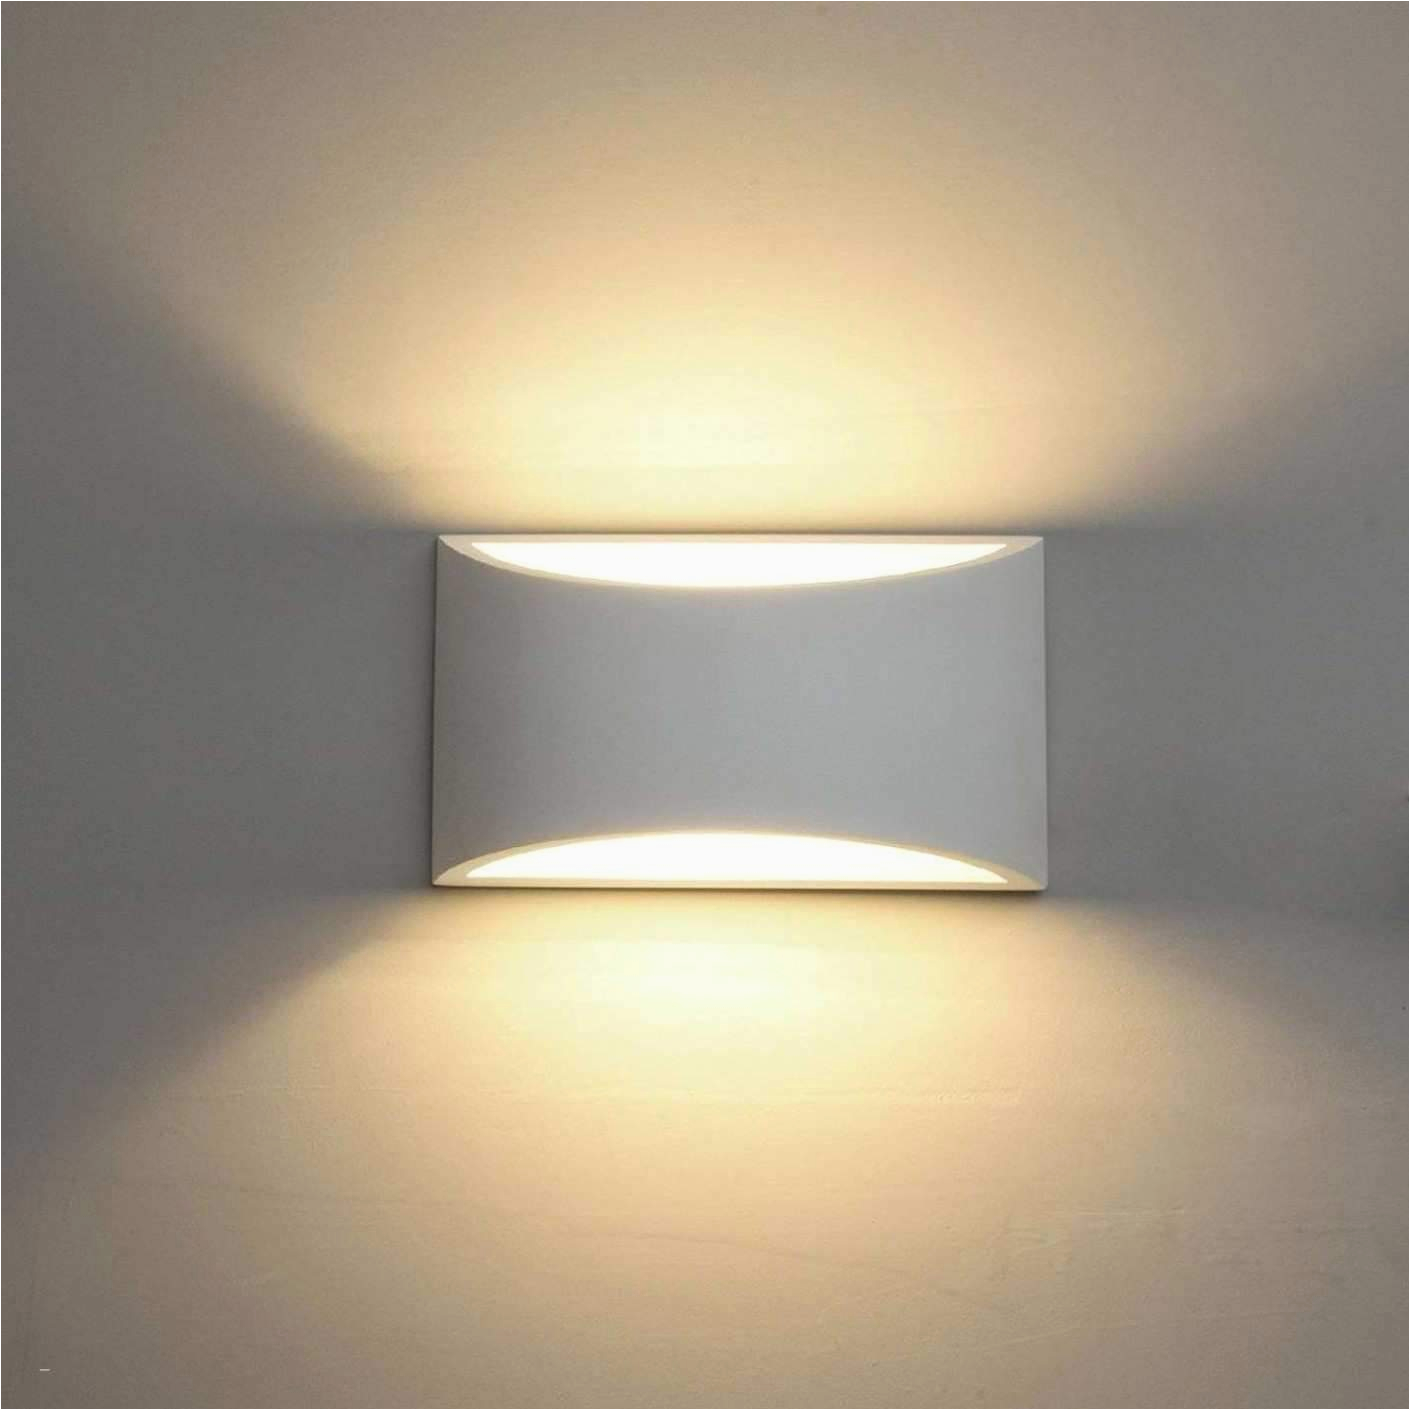 Schlafzimmer Lampe Pendelleuchte Lampen Wohnzimmer Design Neu Deckenlampe Schlafzimmer 0d